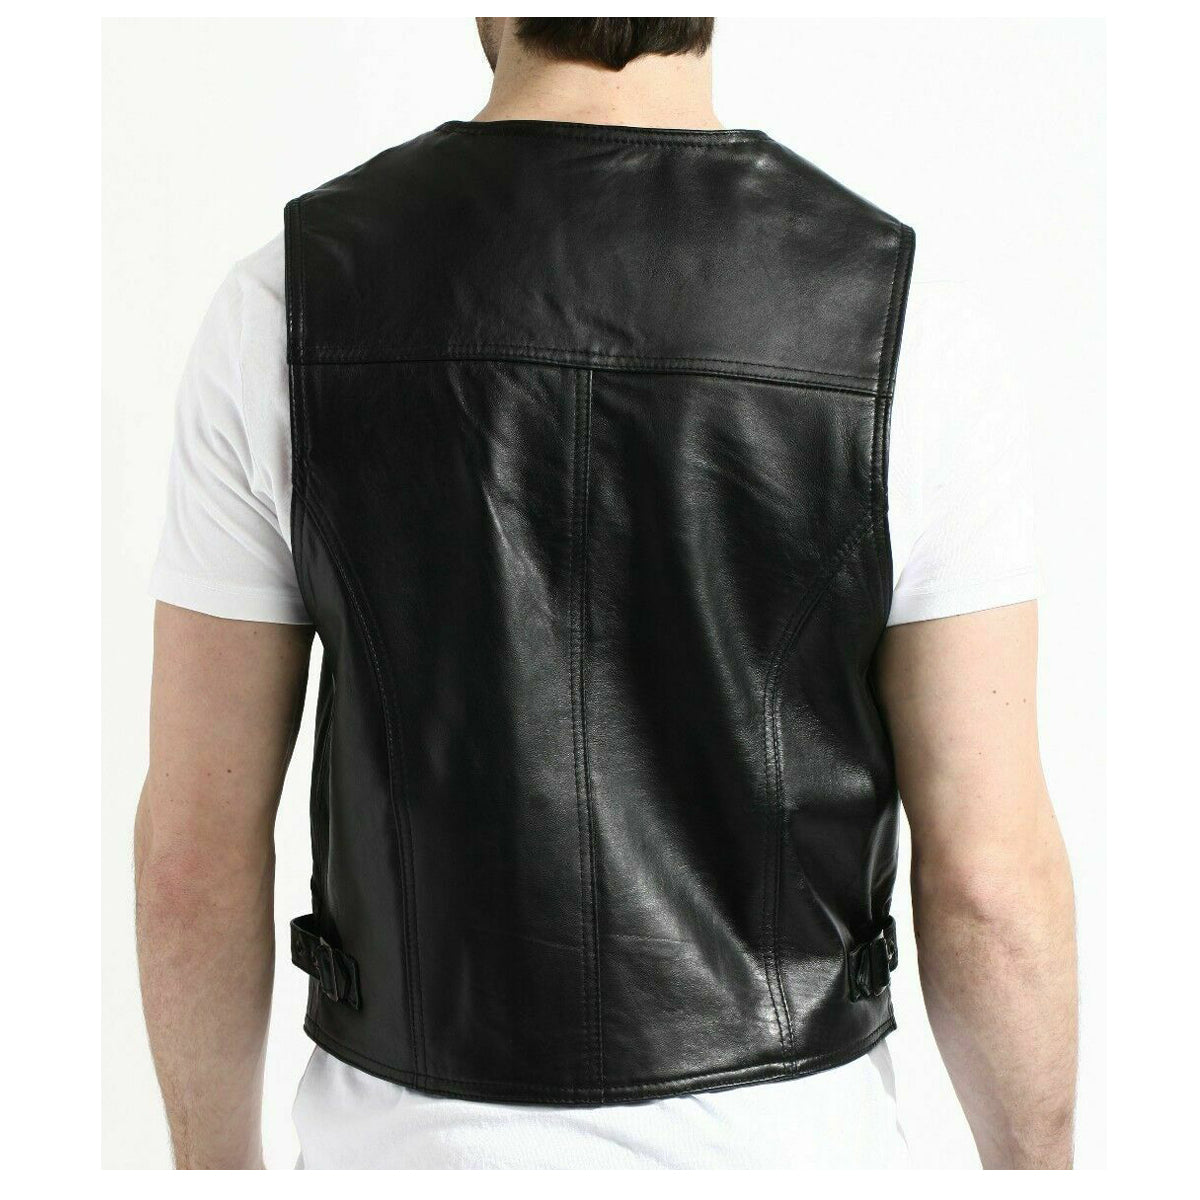 Men Motorcycle Fashion Leather Vest | Biker Rock Style Waistcoat